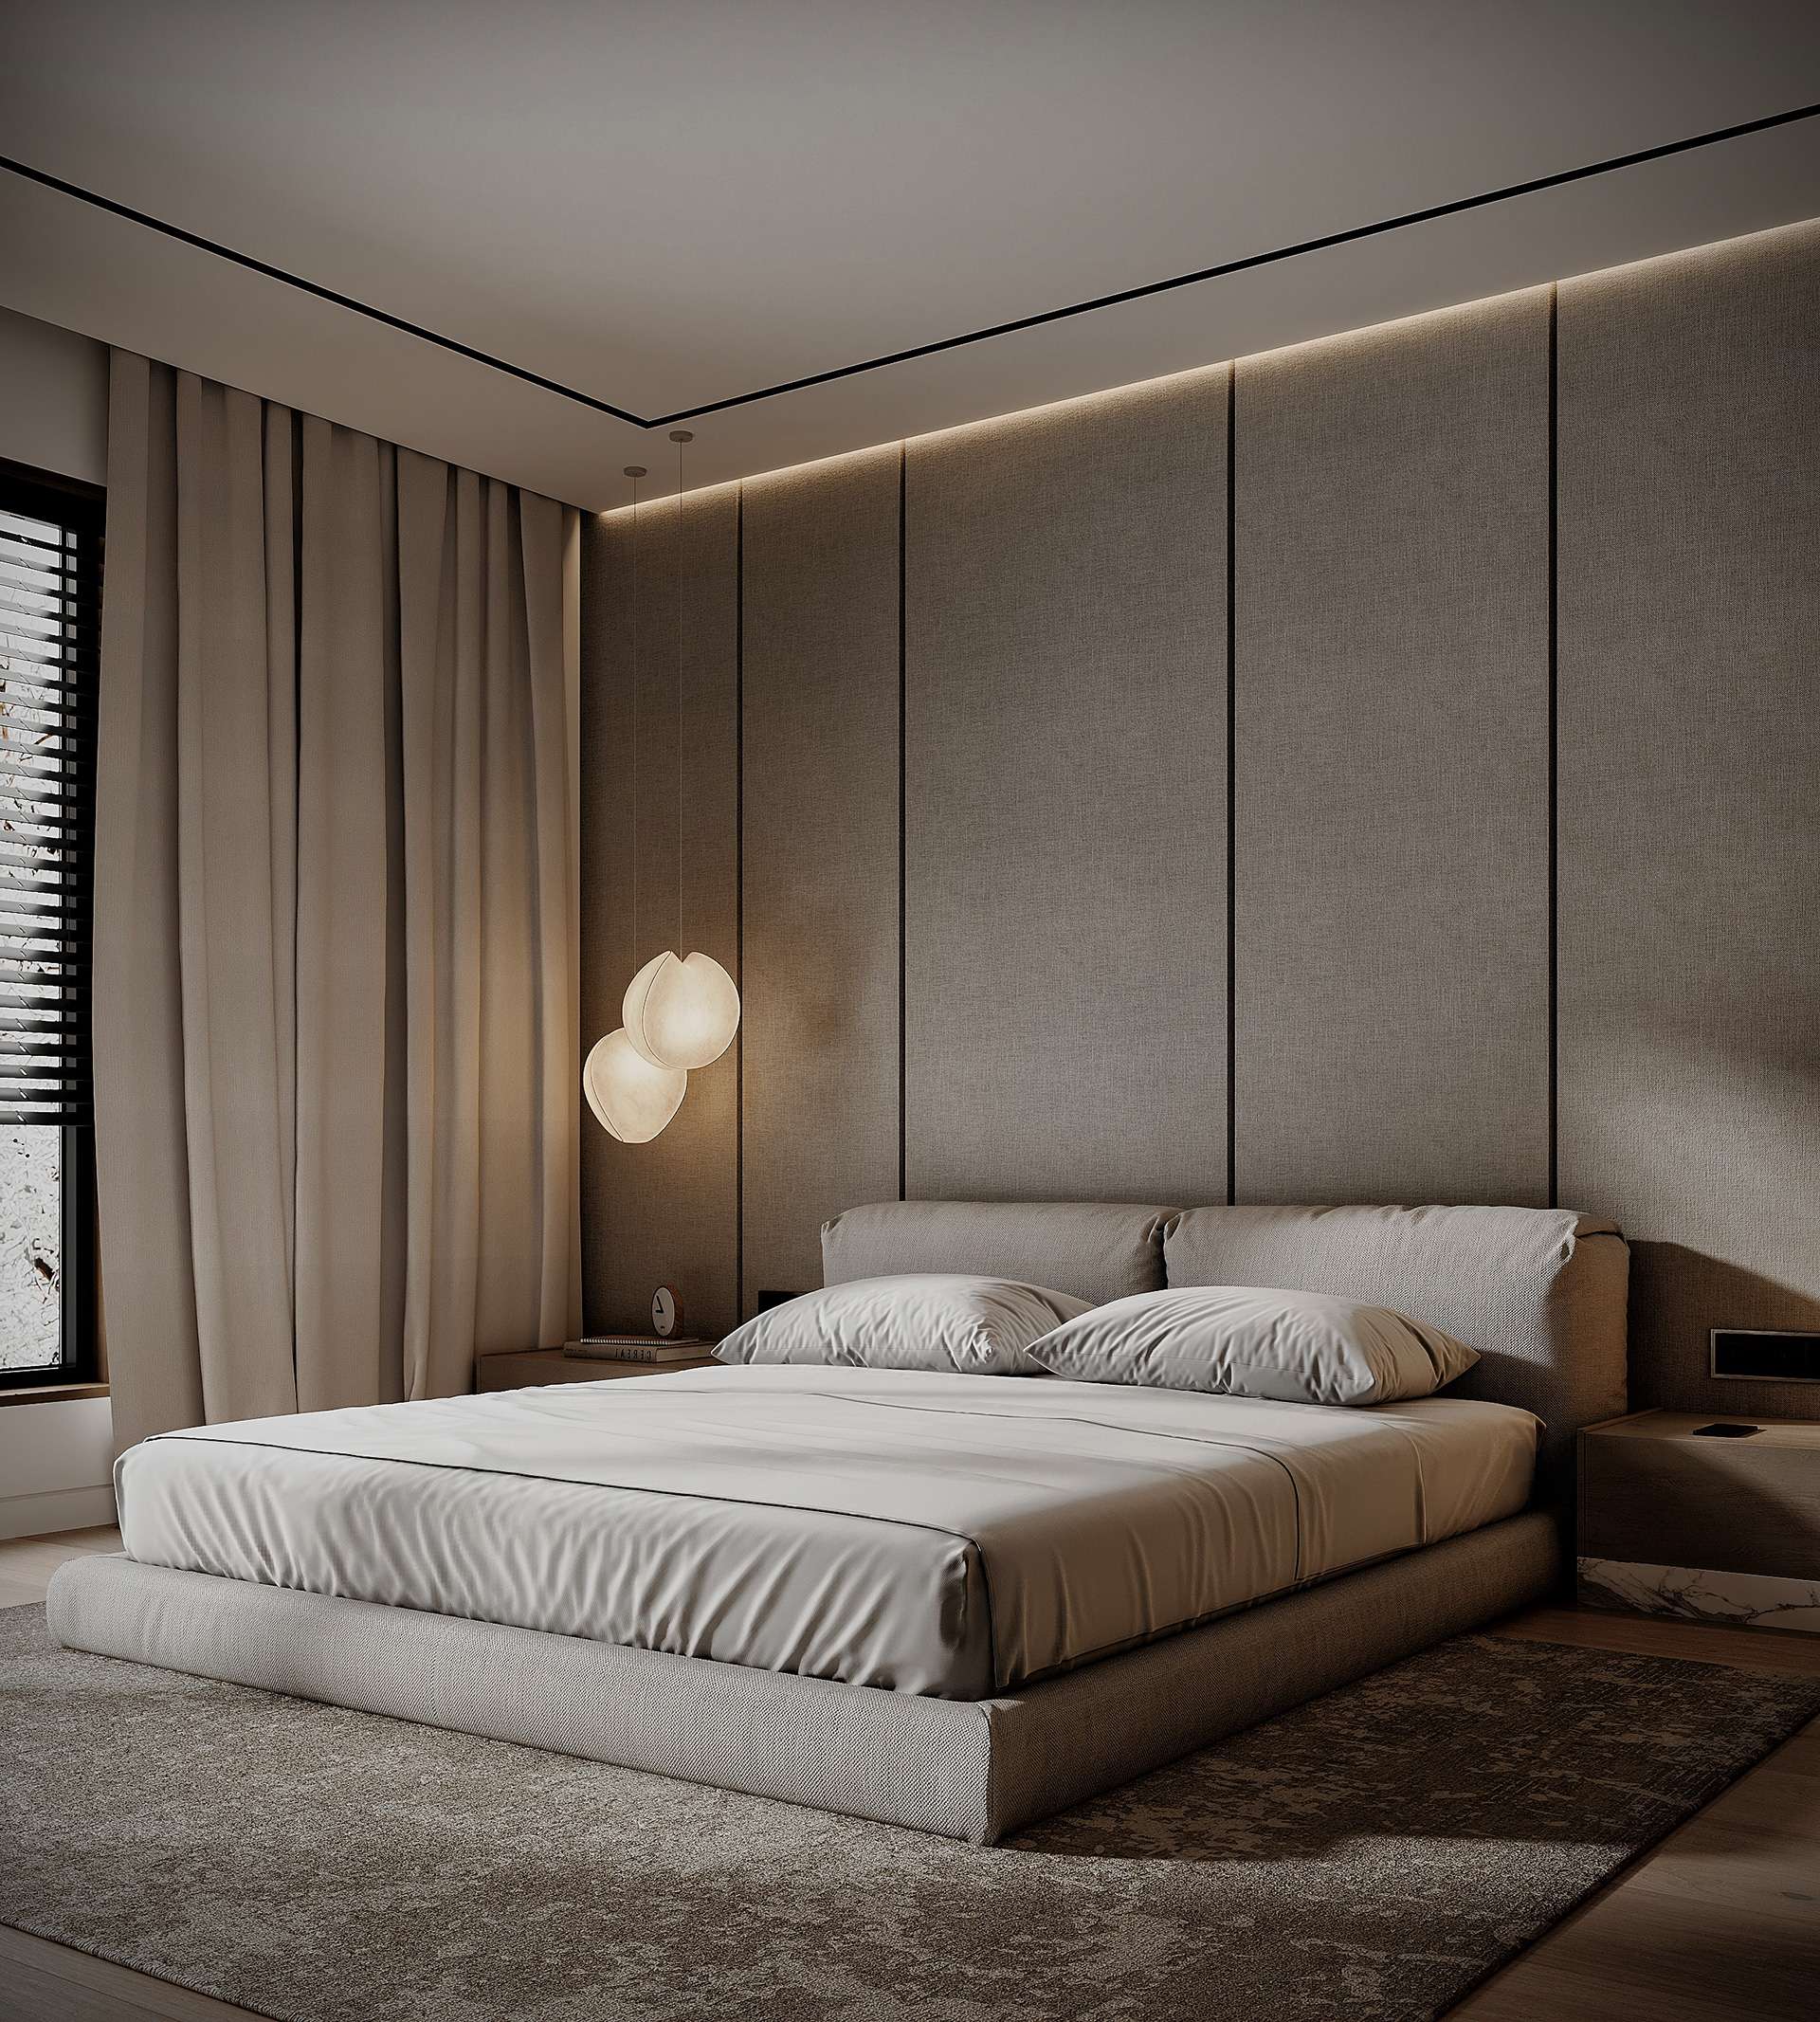 Thiết kế phòng ngủ căn hộ 80m2 với tông màu trắng xám cùng nội thất đơn giản